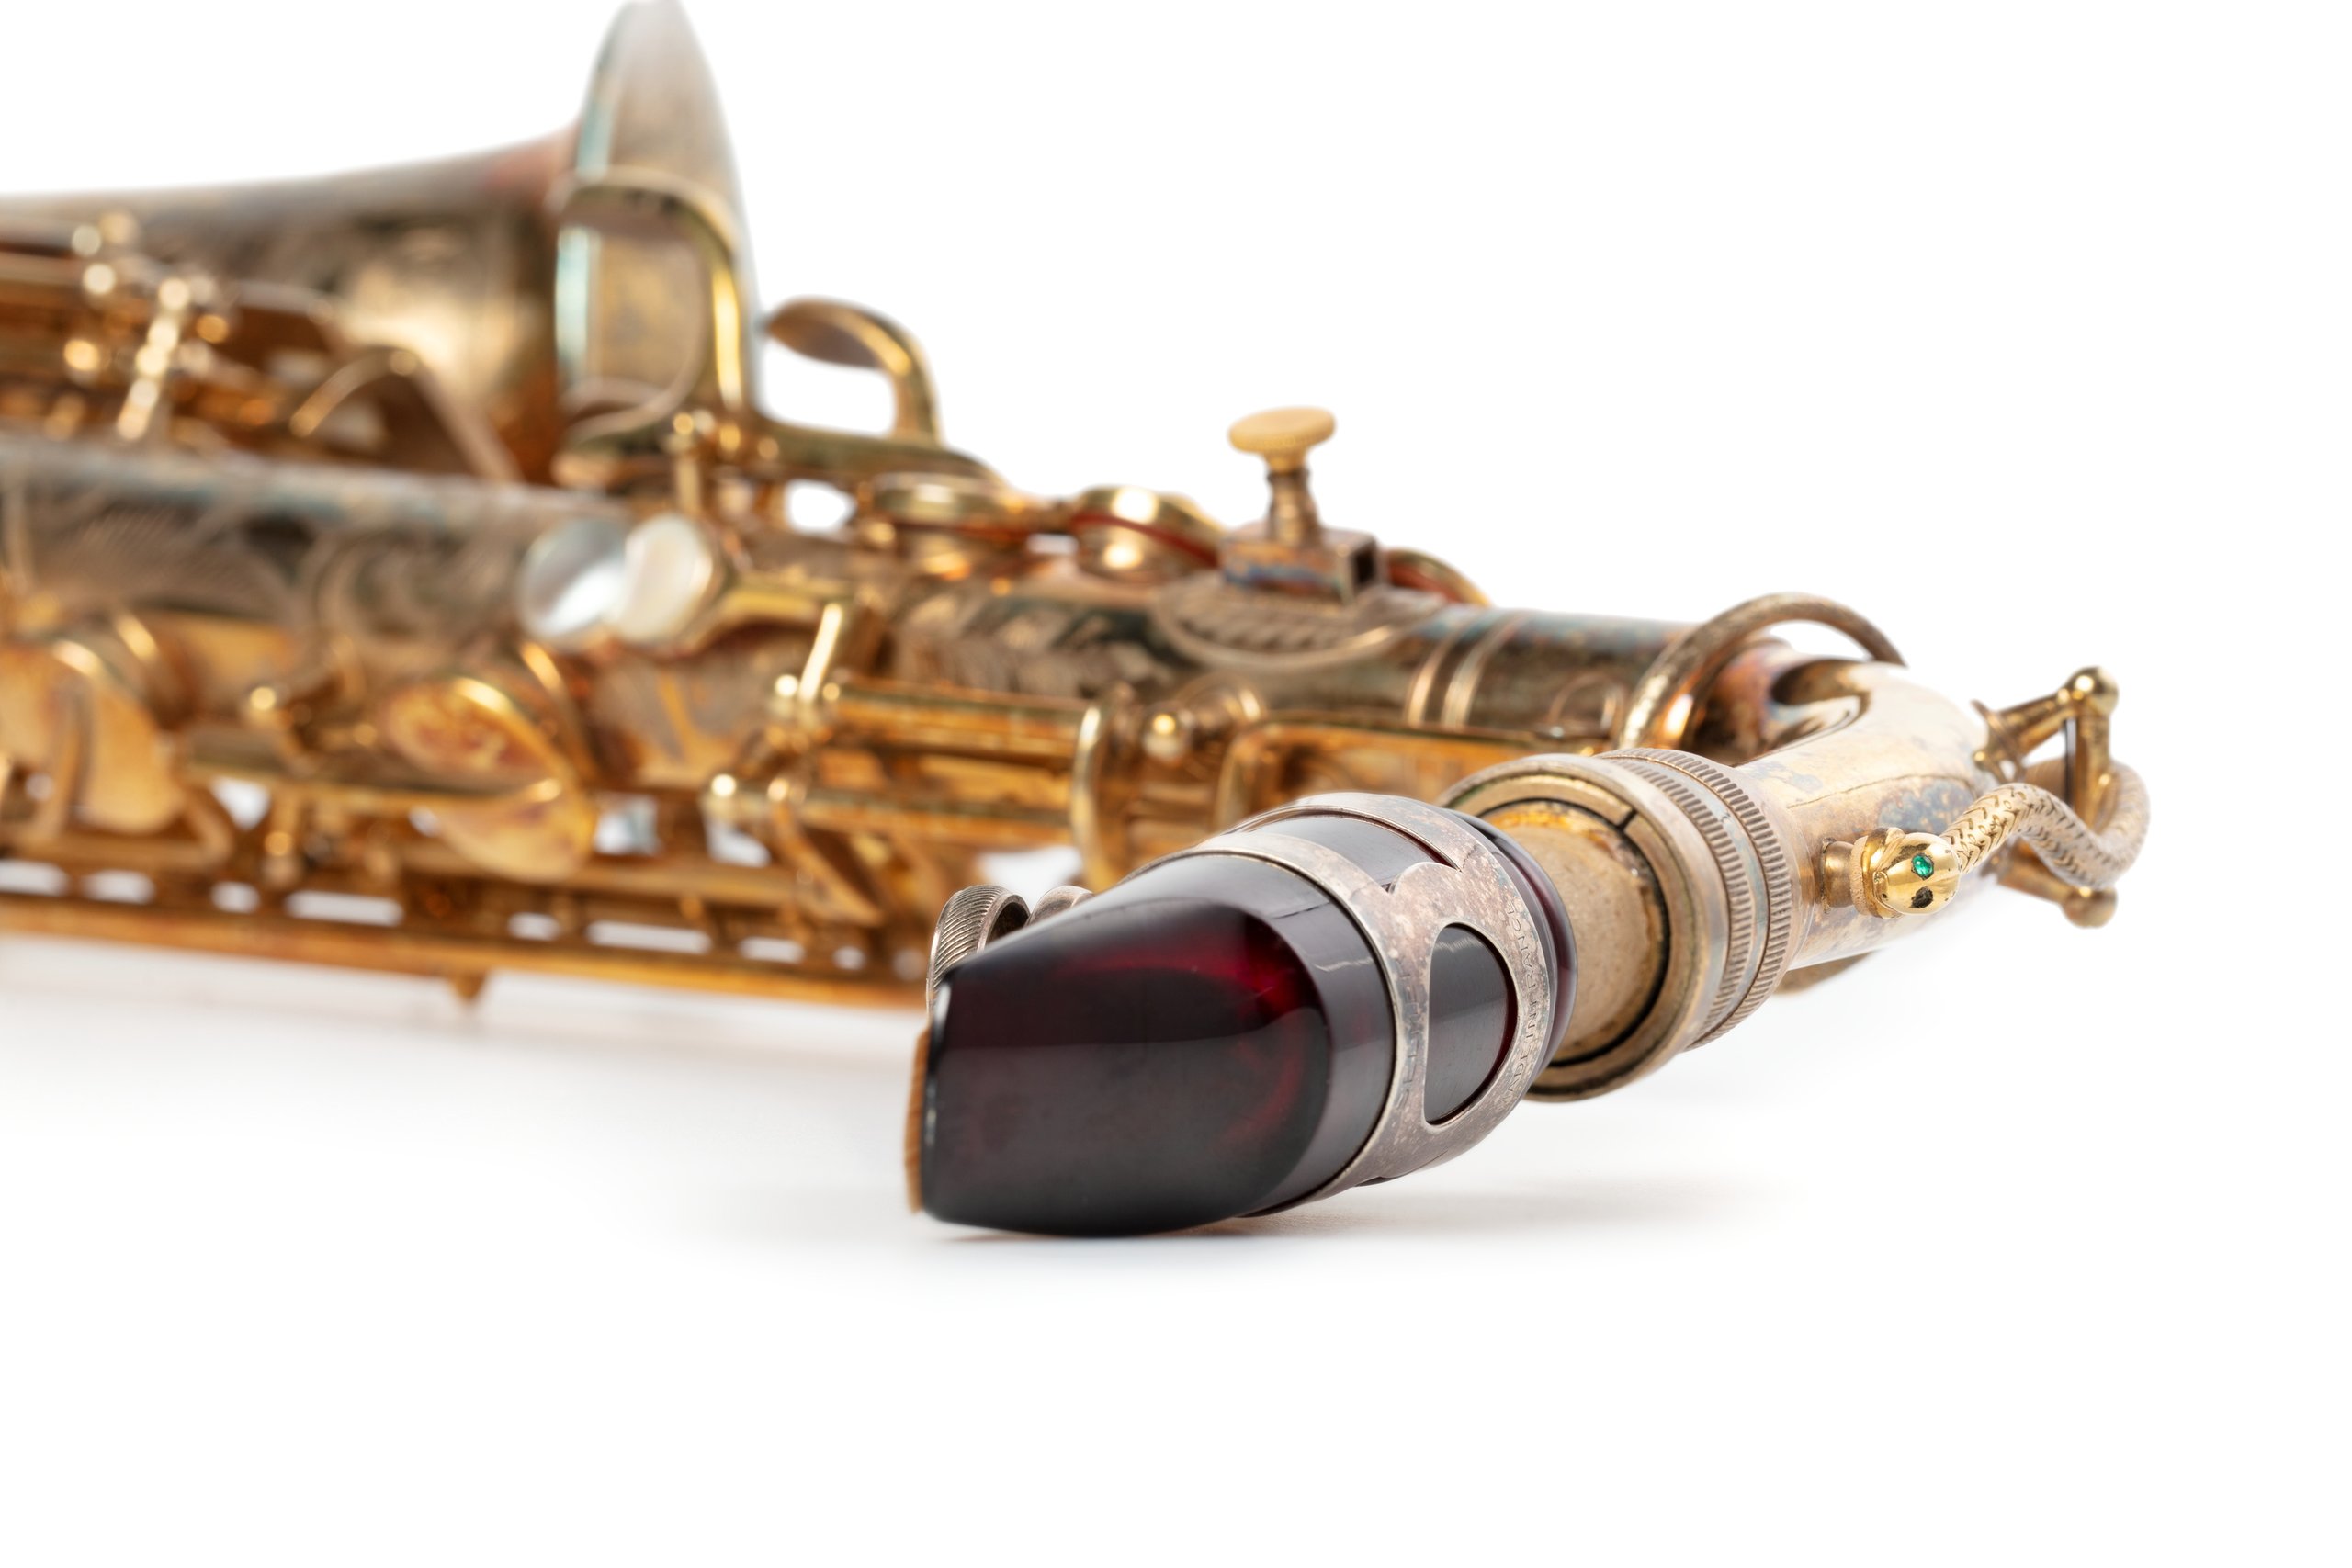 Alto saxophone by J E Becker